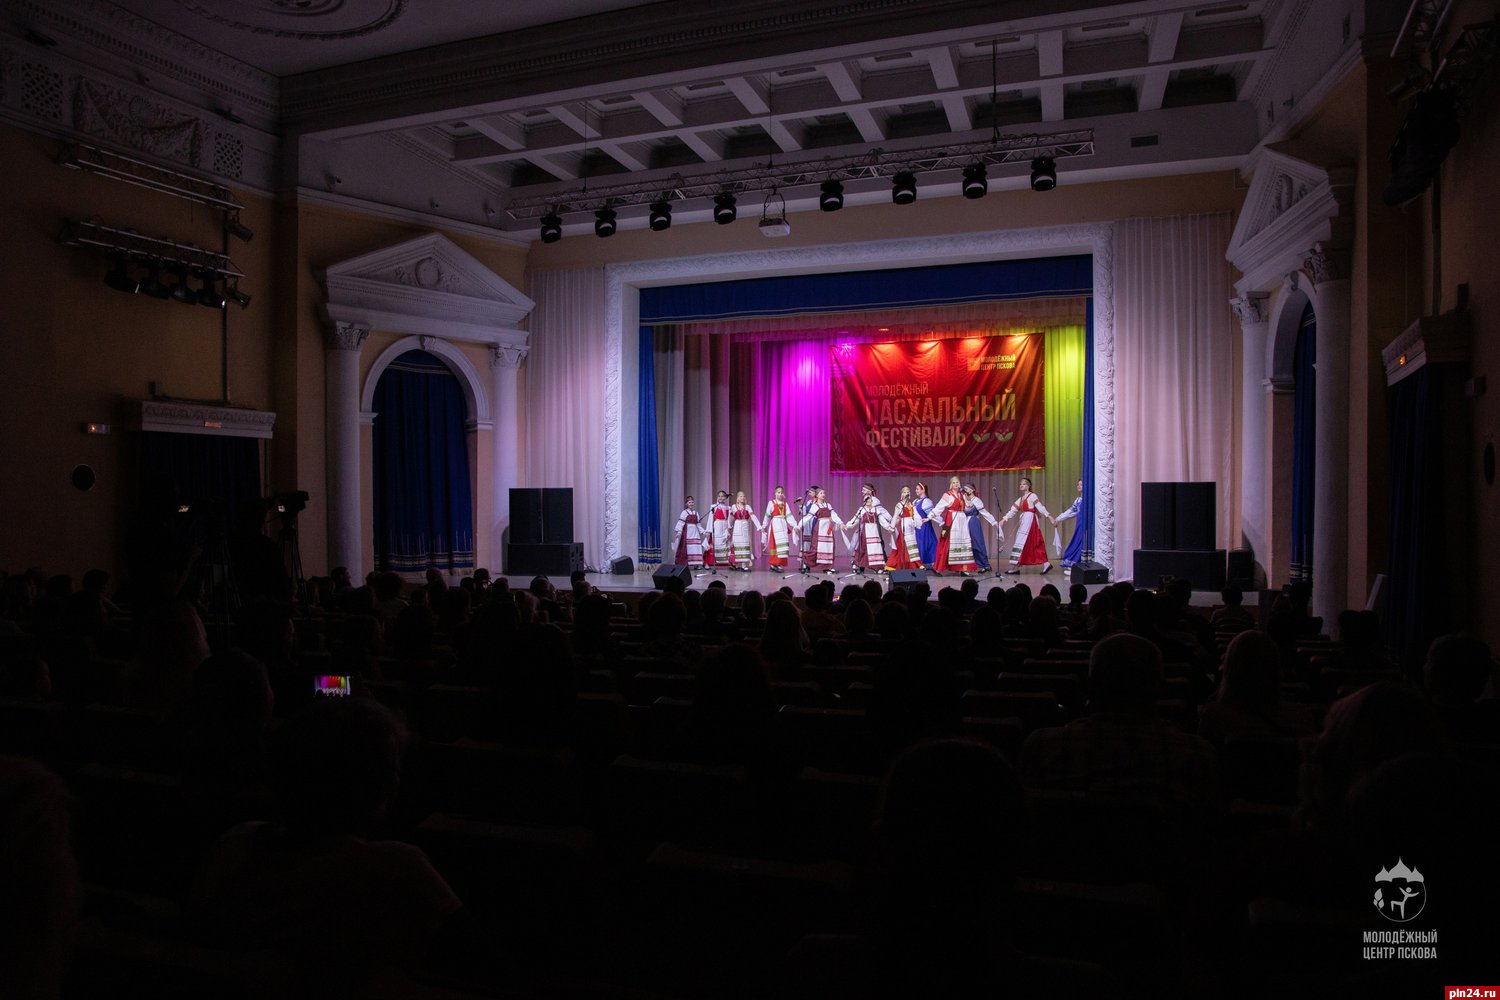 Молодёжный концерт состоится в Пскове в рамках пасхального фестиваля